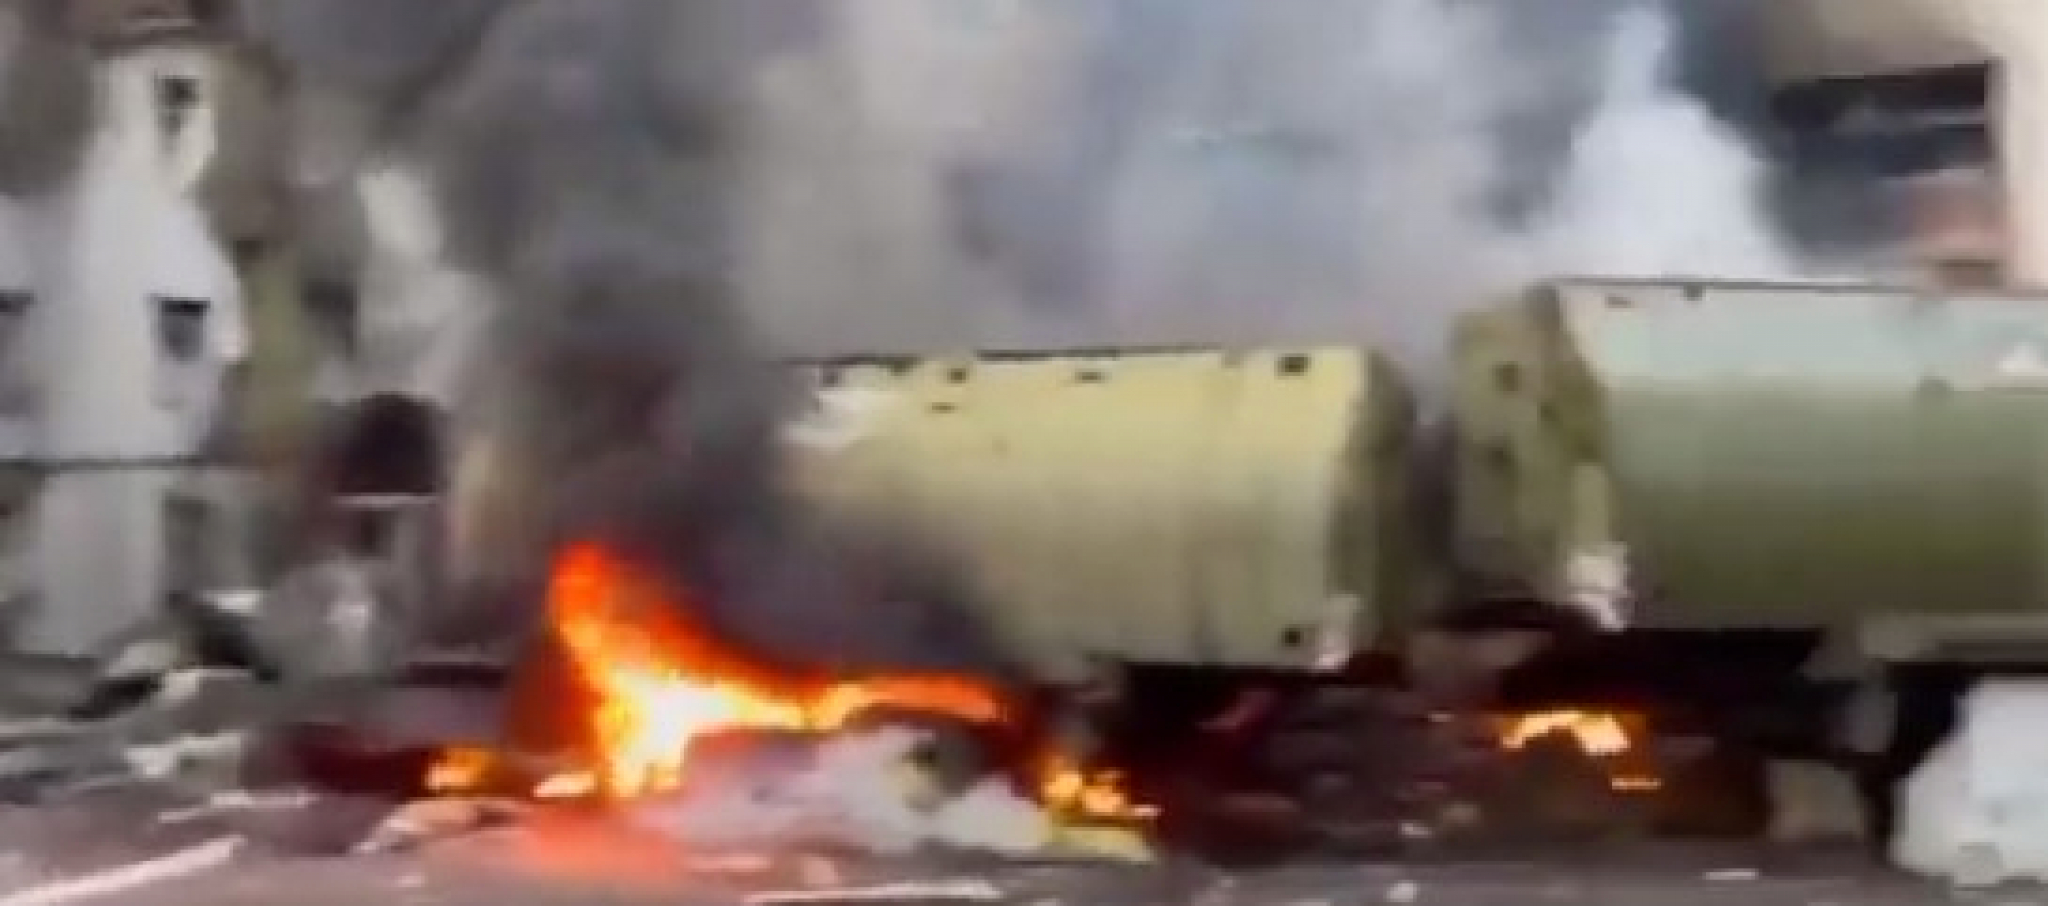 SVE GORI! Napadnuto rusko komandno mesto: Ubijeno je na desetine vojnika (VIDEO)